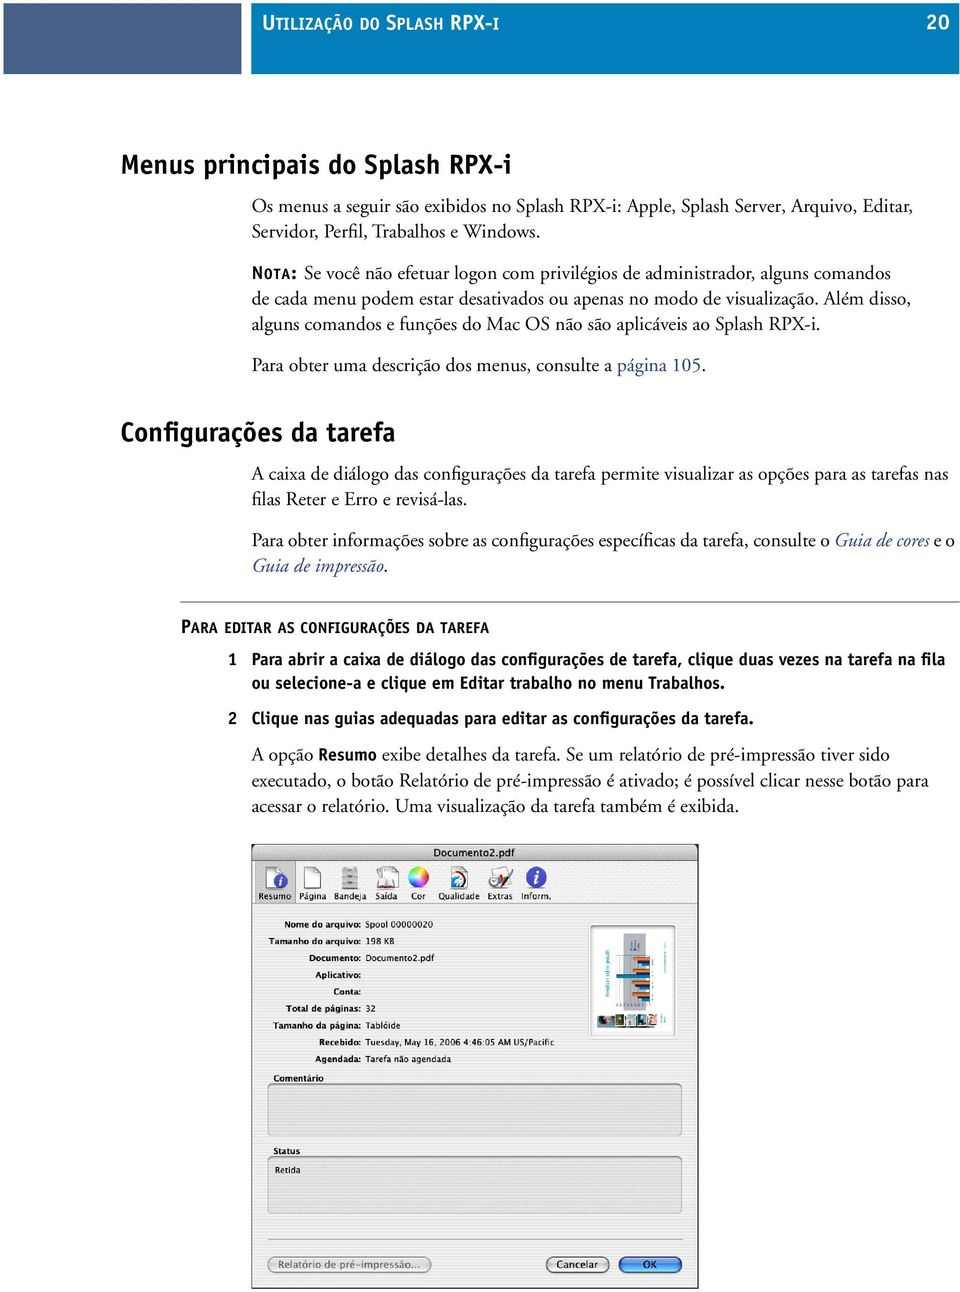 Além disso, alguns comandos e funções do Mac OS não são aplicáveis ao Splash RPX-i. Para obter uma descrição dos menus, consulte a página 105.